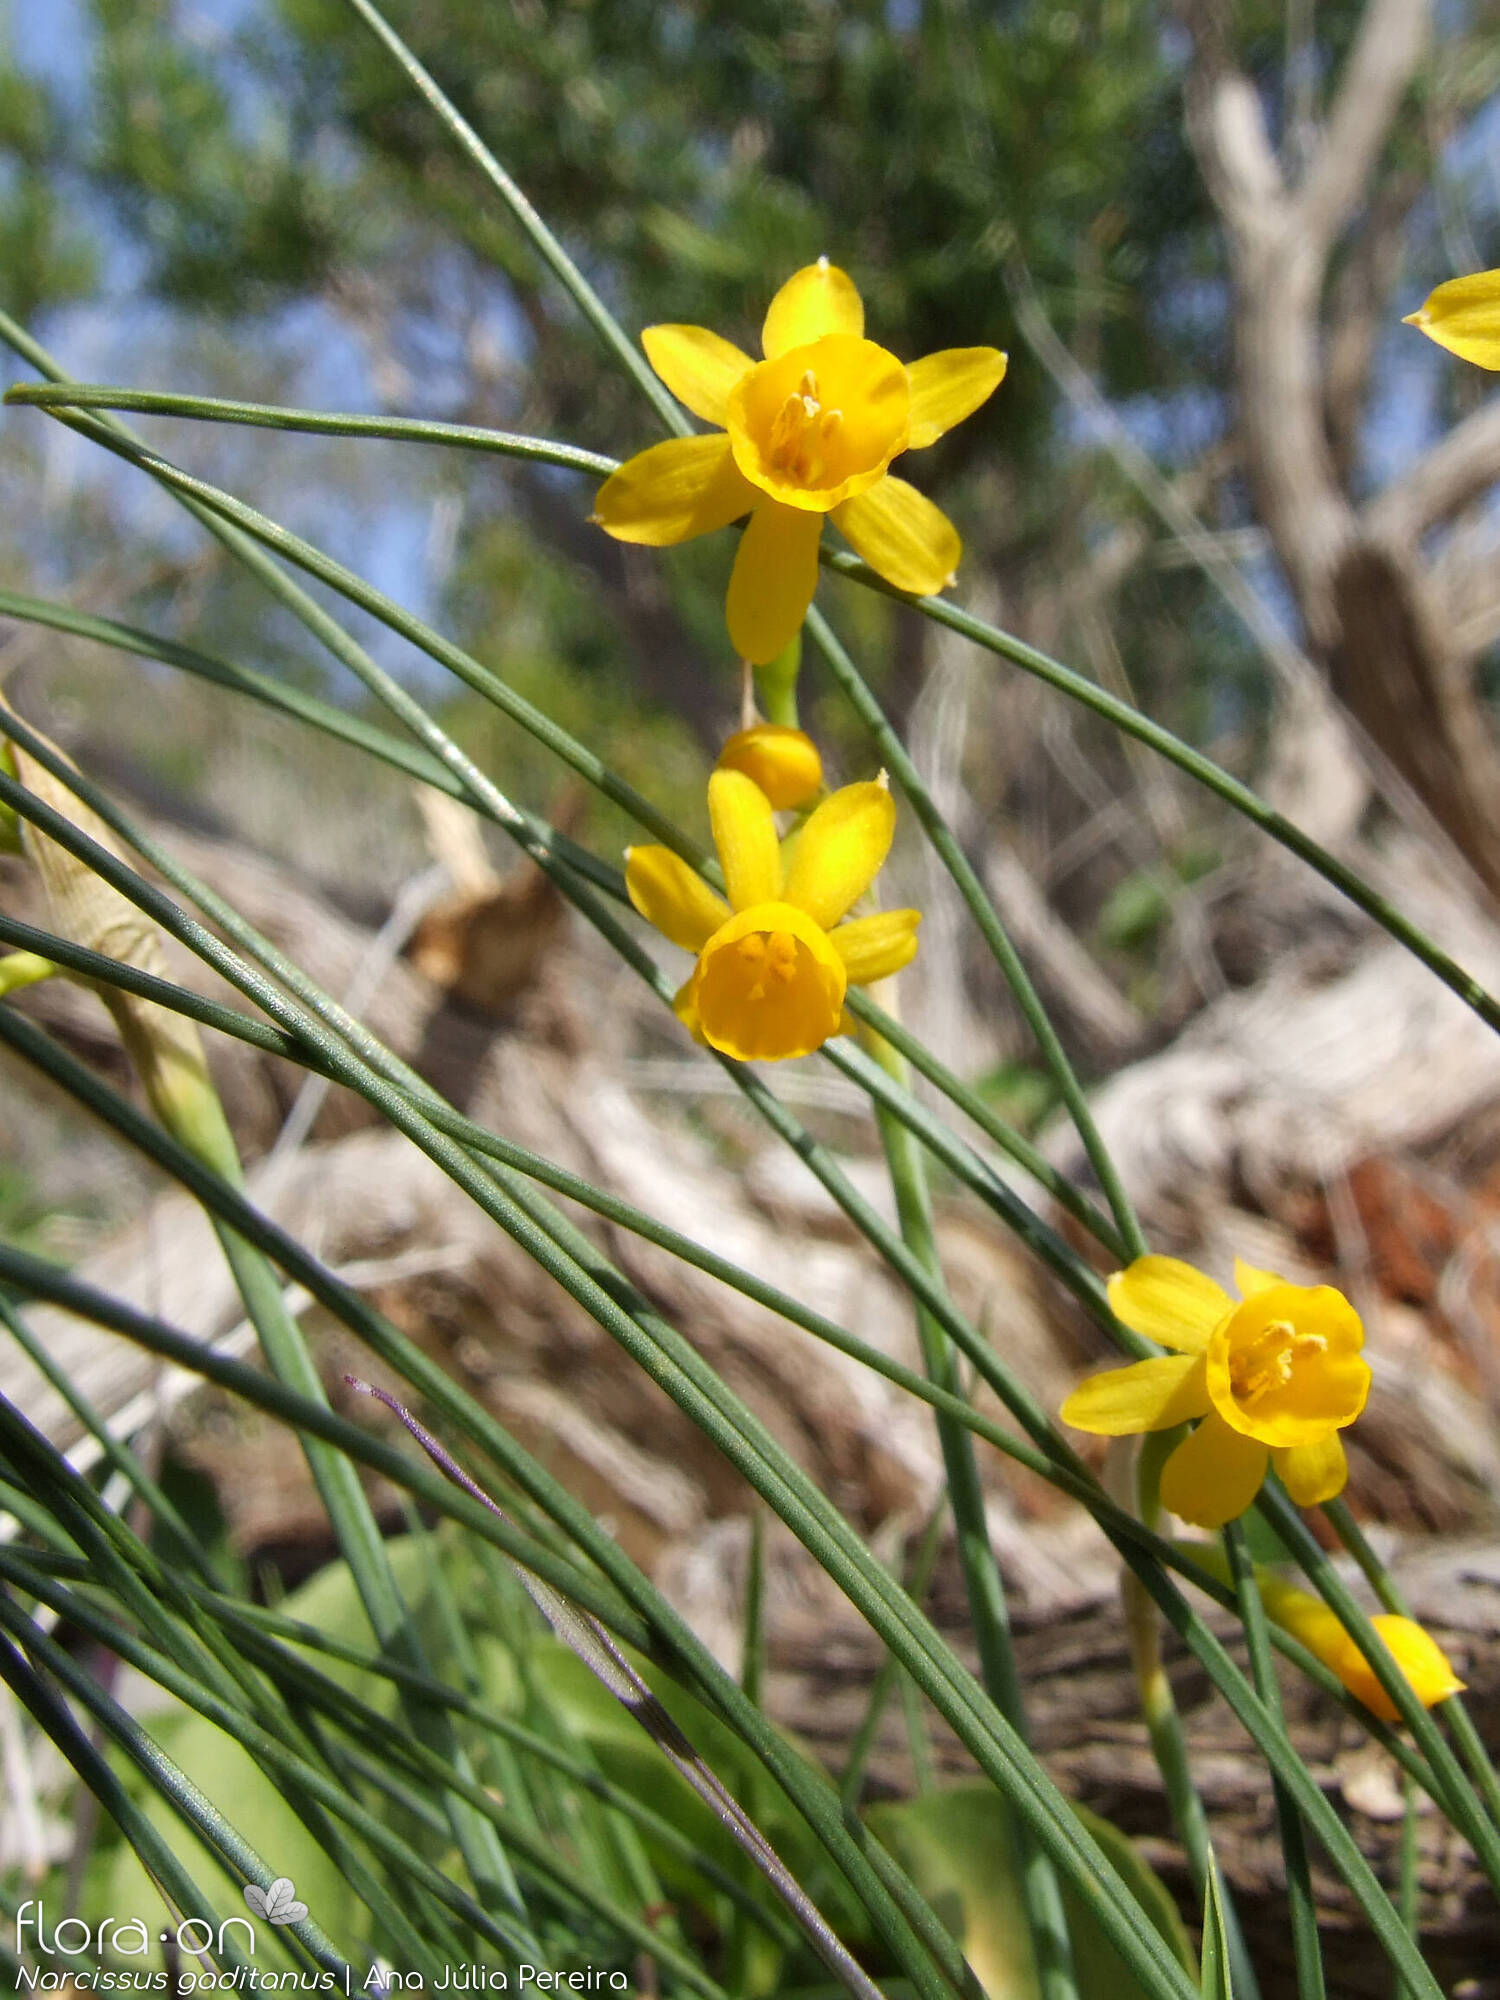 Narcissus gaditanus - Flor (geral) | Ana Júlia Pereira; CC BY-NC 4.0